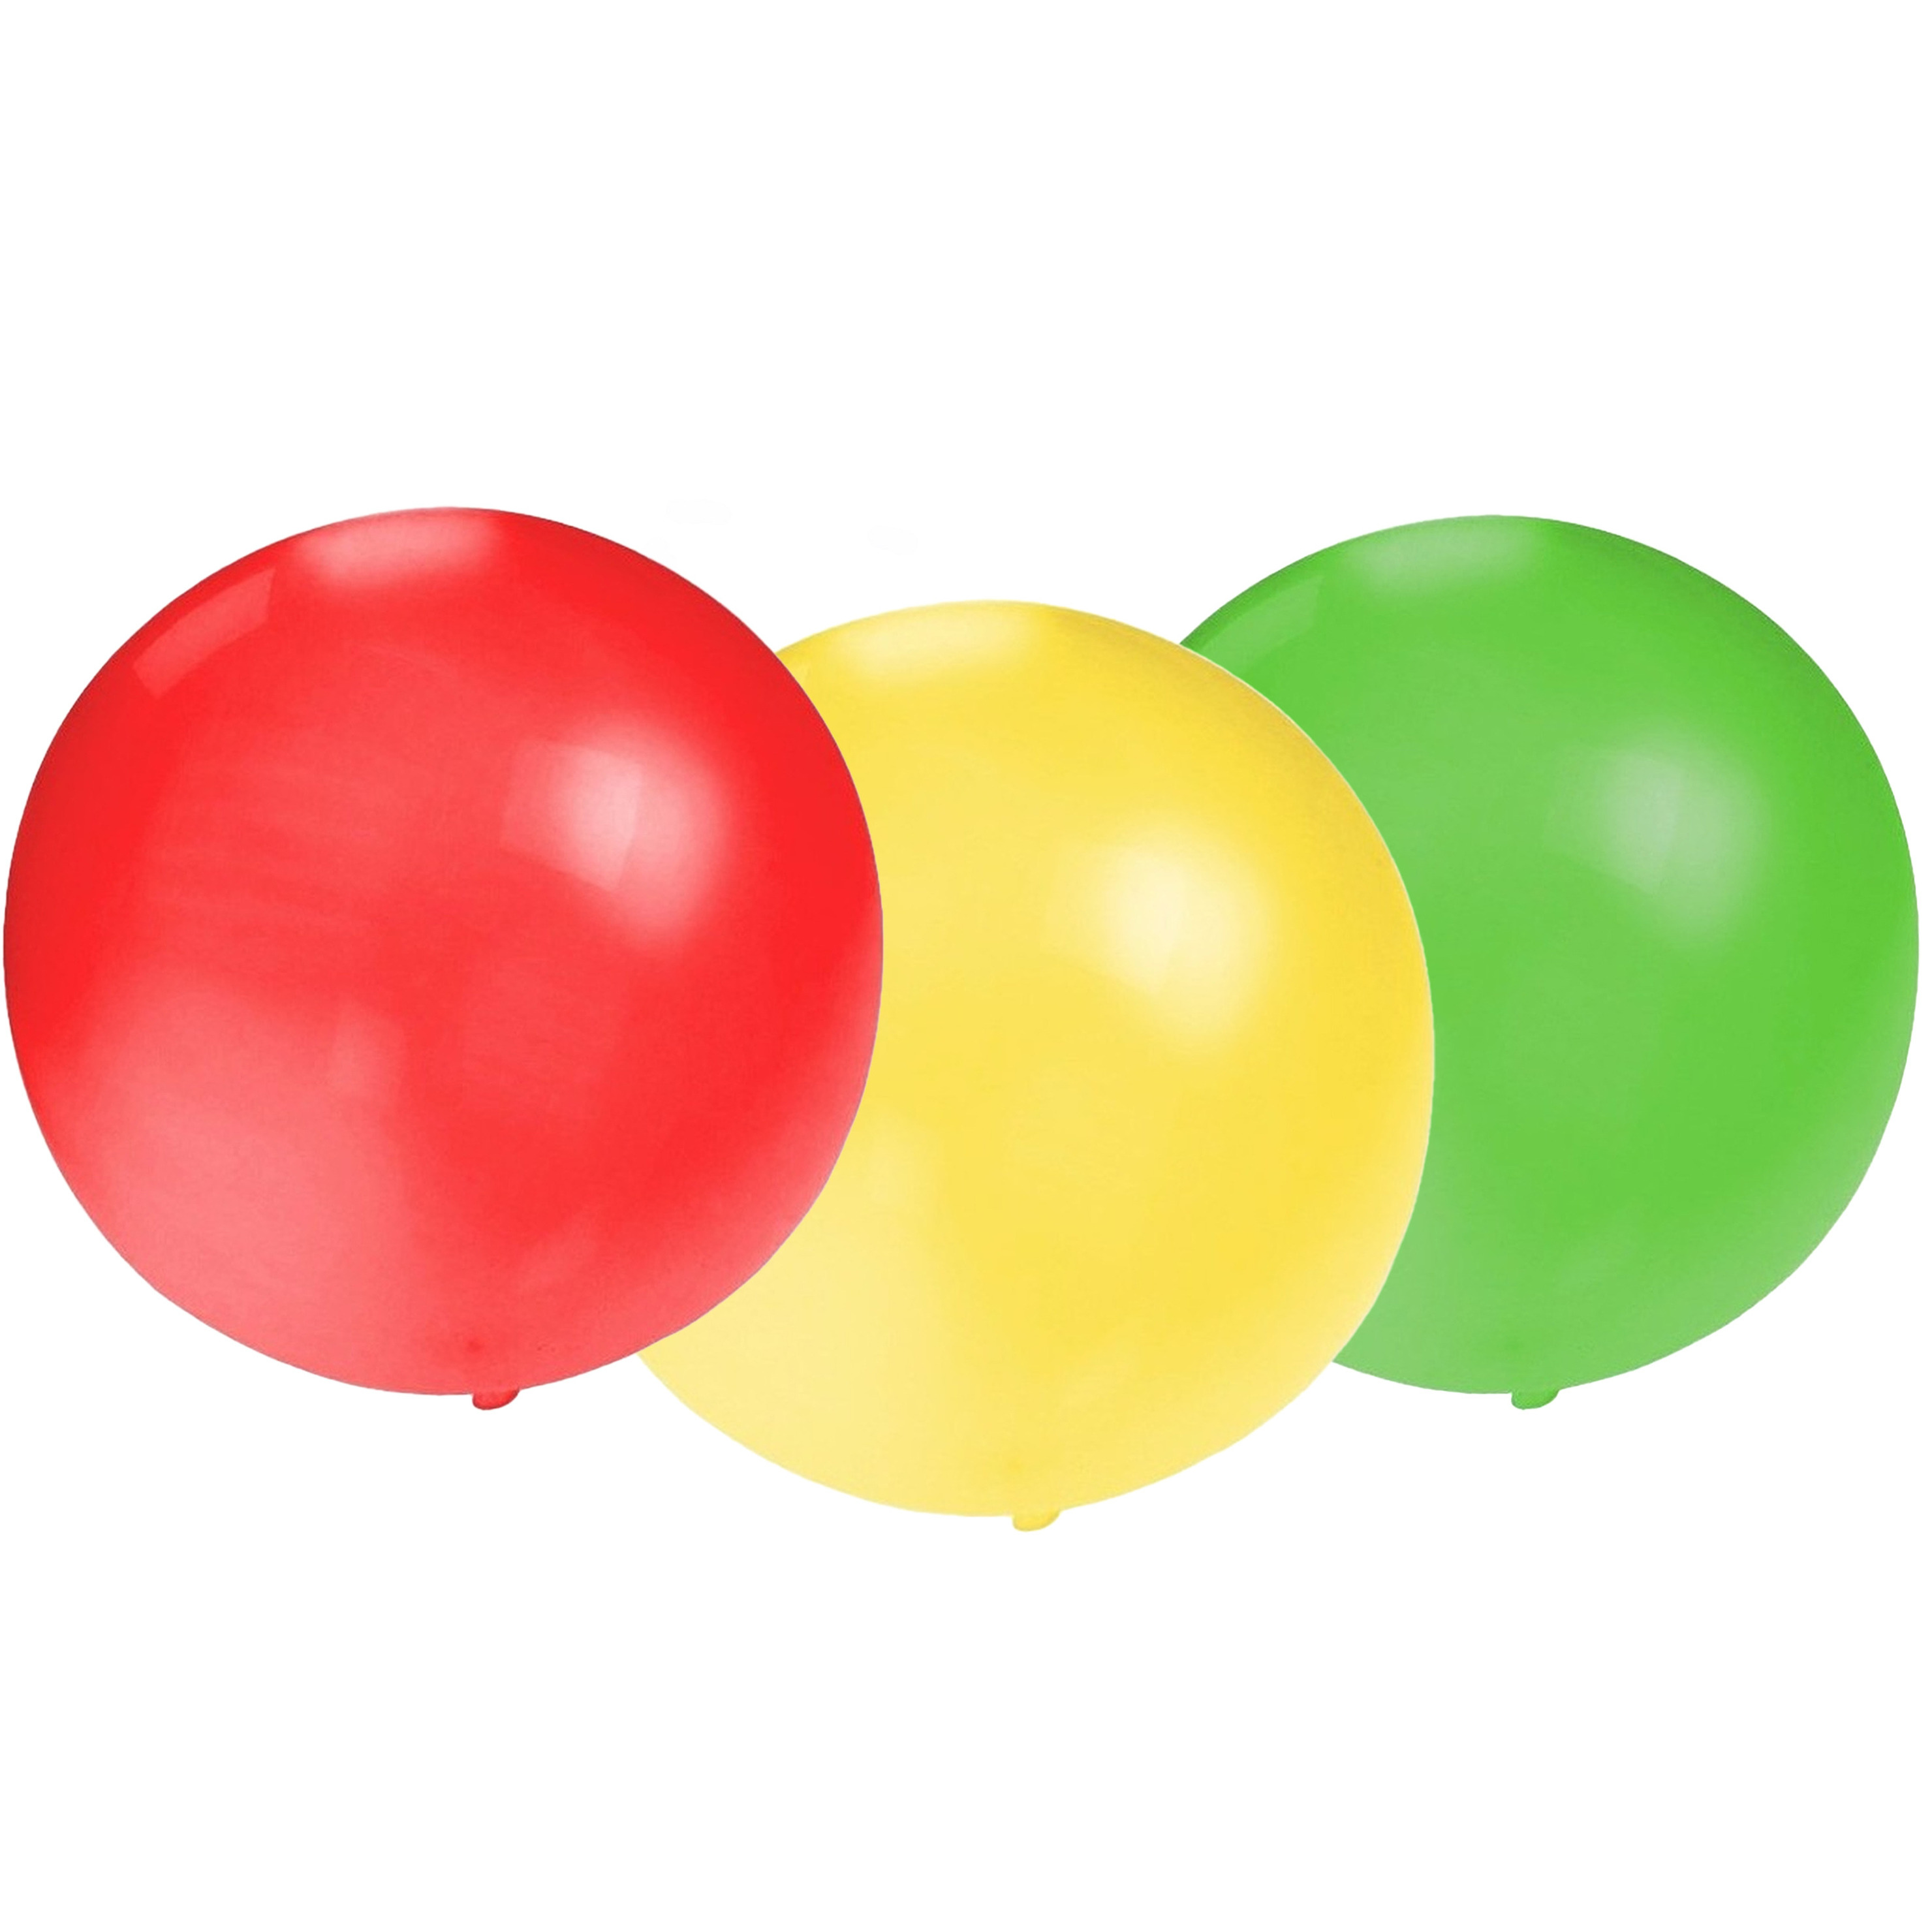 Bellatio Decorations 24x groot formaat ballonnen rood/groen/geel met diameter 60 cm